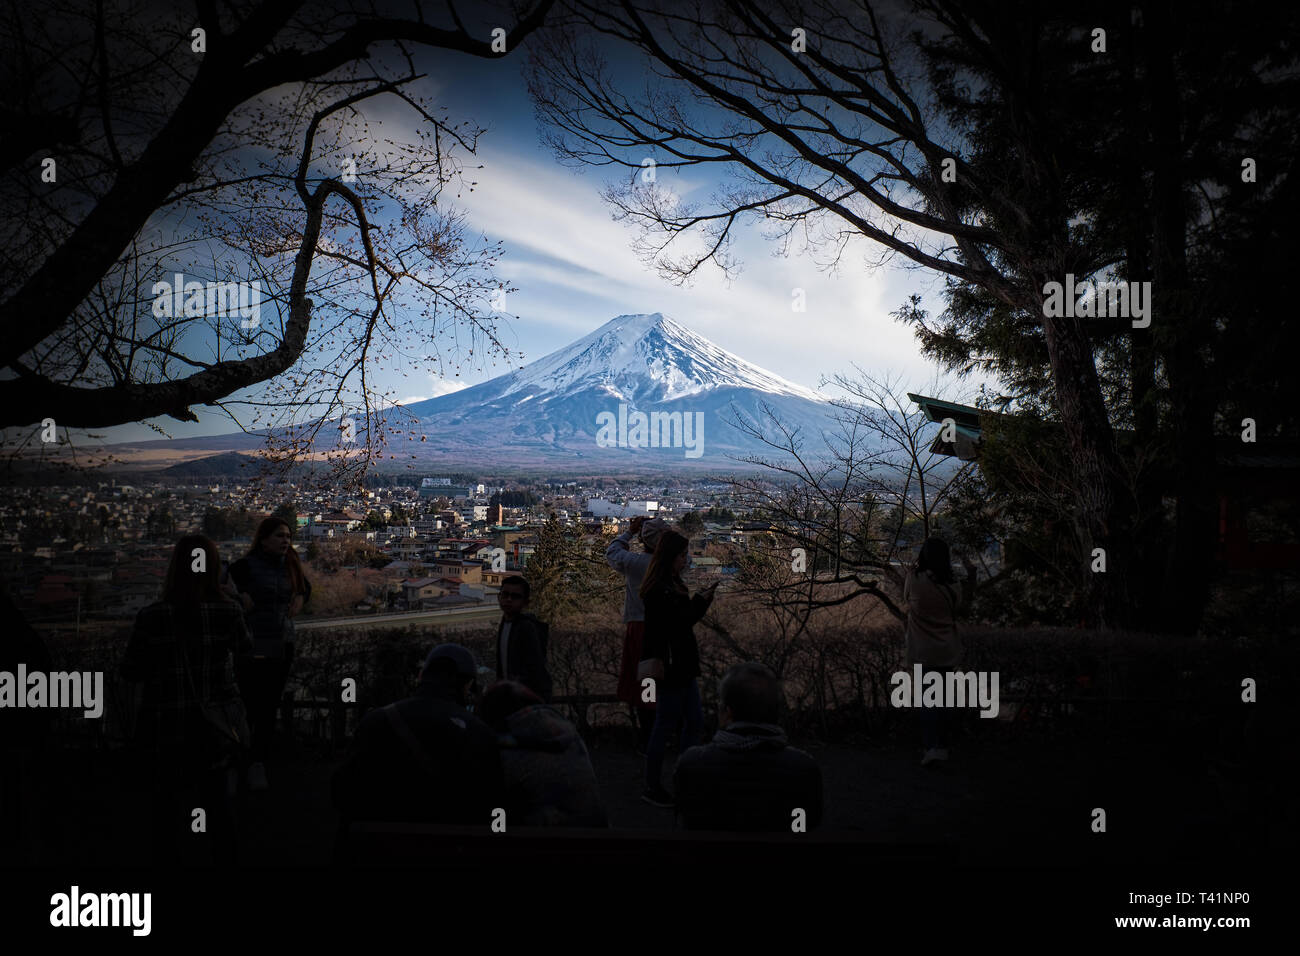 Touristen fotografieren auf den Berg Fuji in der Nähe der Stadt Fujiyoshida, Japan. Stockfoto